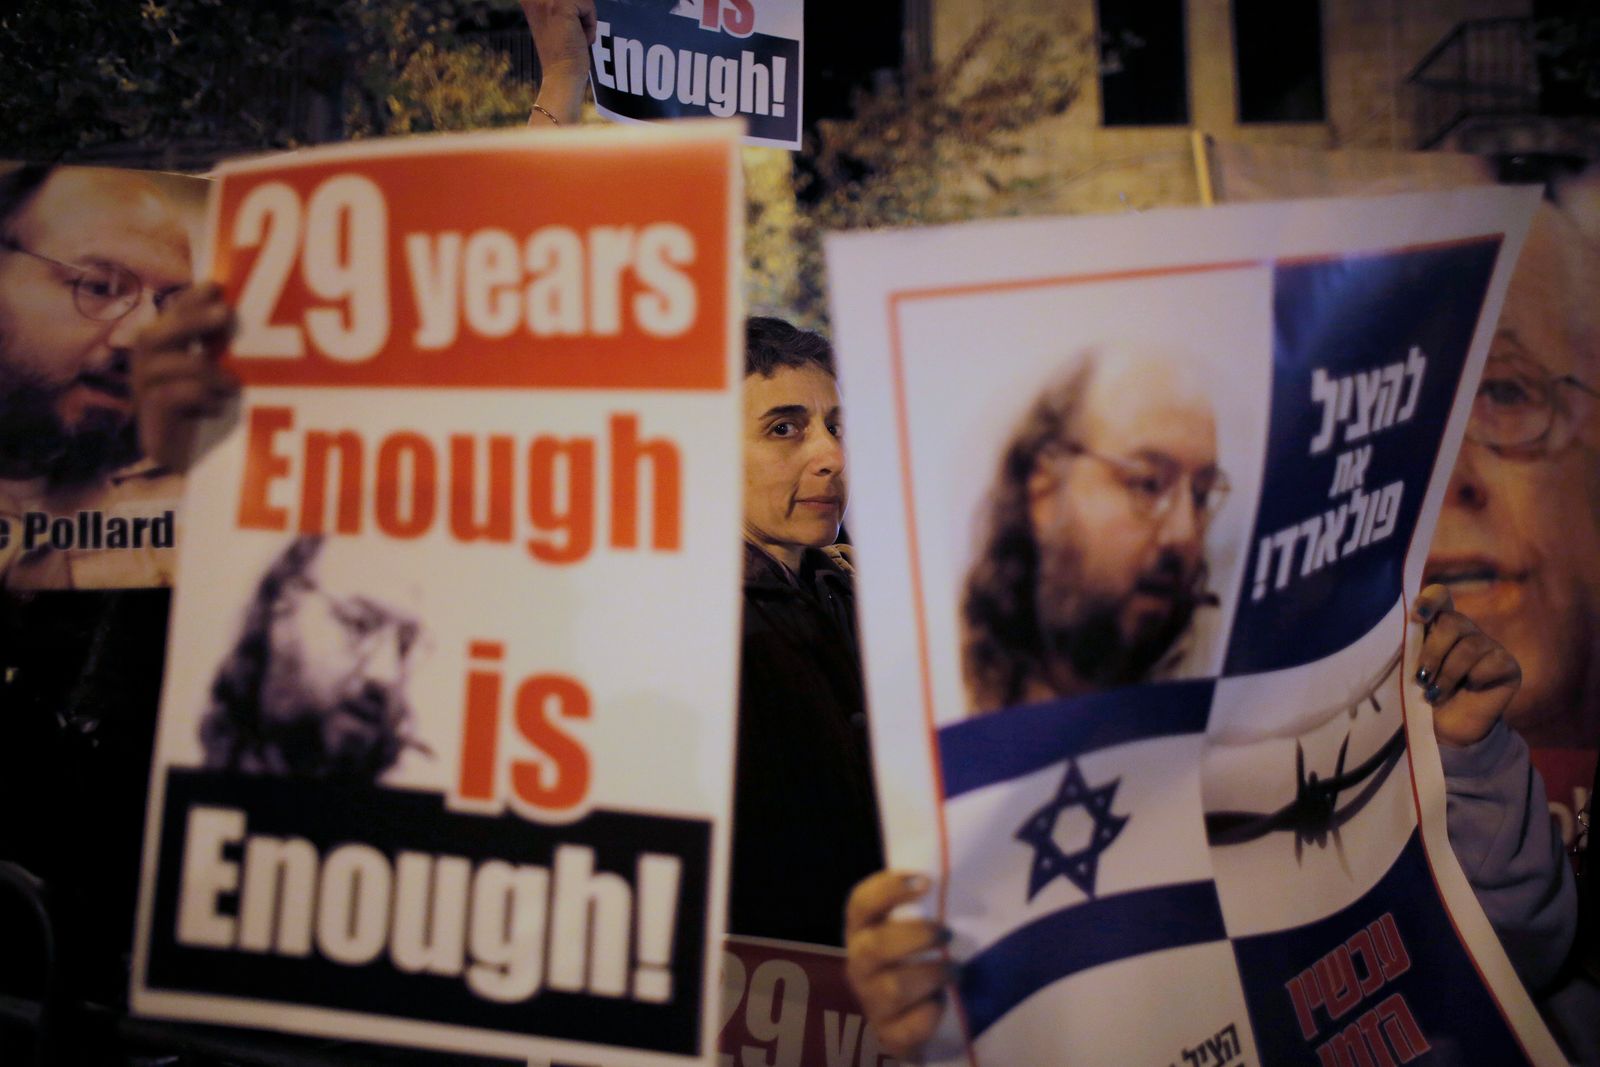 إسرائيليون يحملون لافتات تصور بولارد خلال مظاهرة للمطالبة بالإفراج عنه من سجن أمريكي - REUTERS